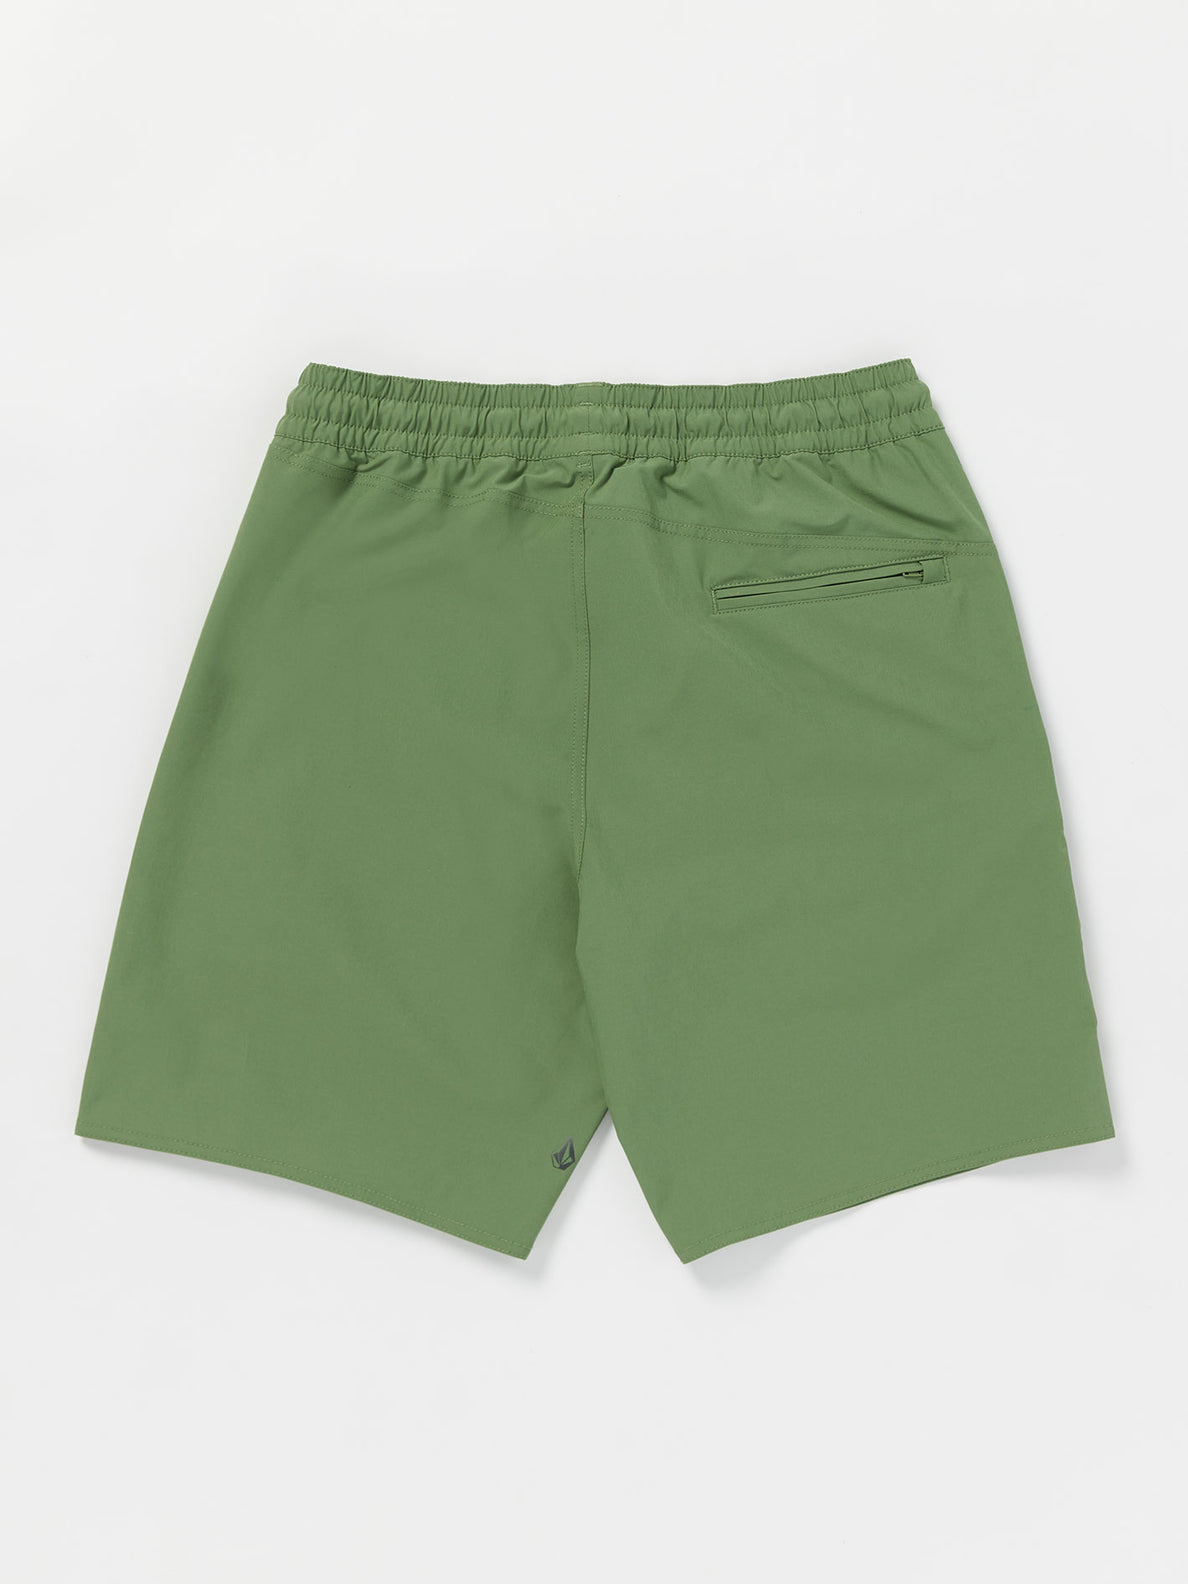 Saturdazze Elastic Waist Shorts - Dusty Green